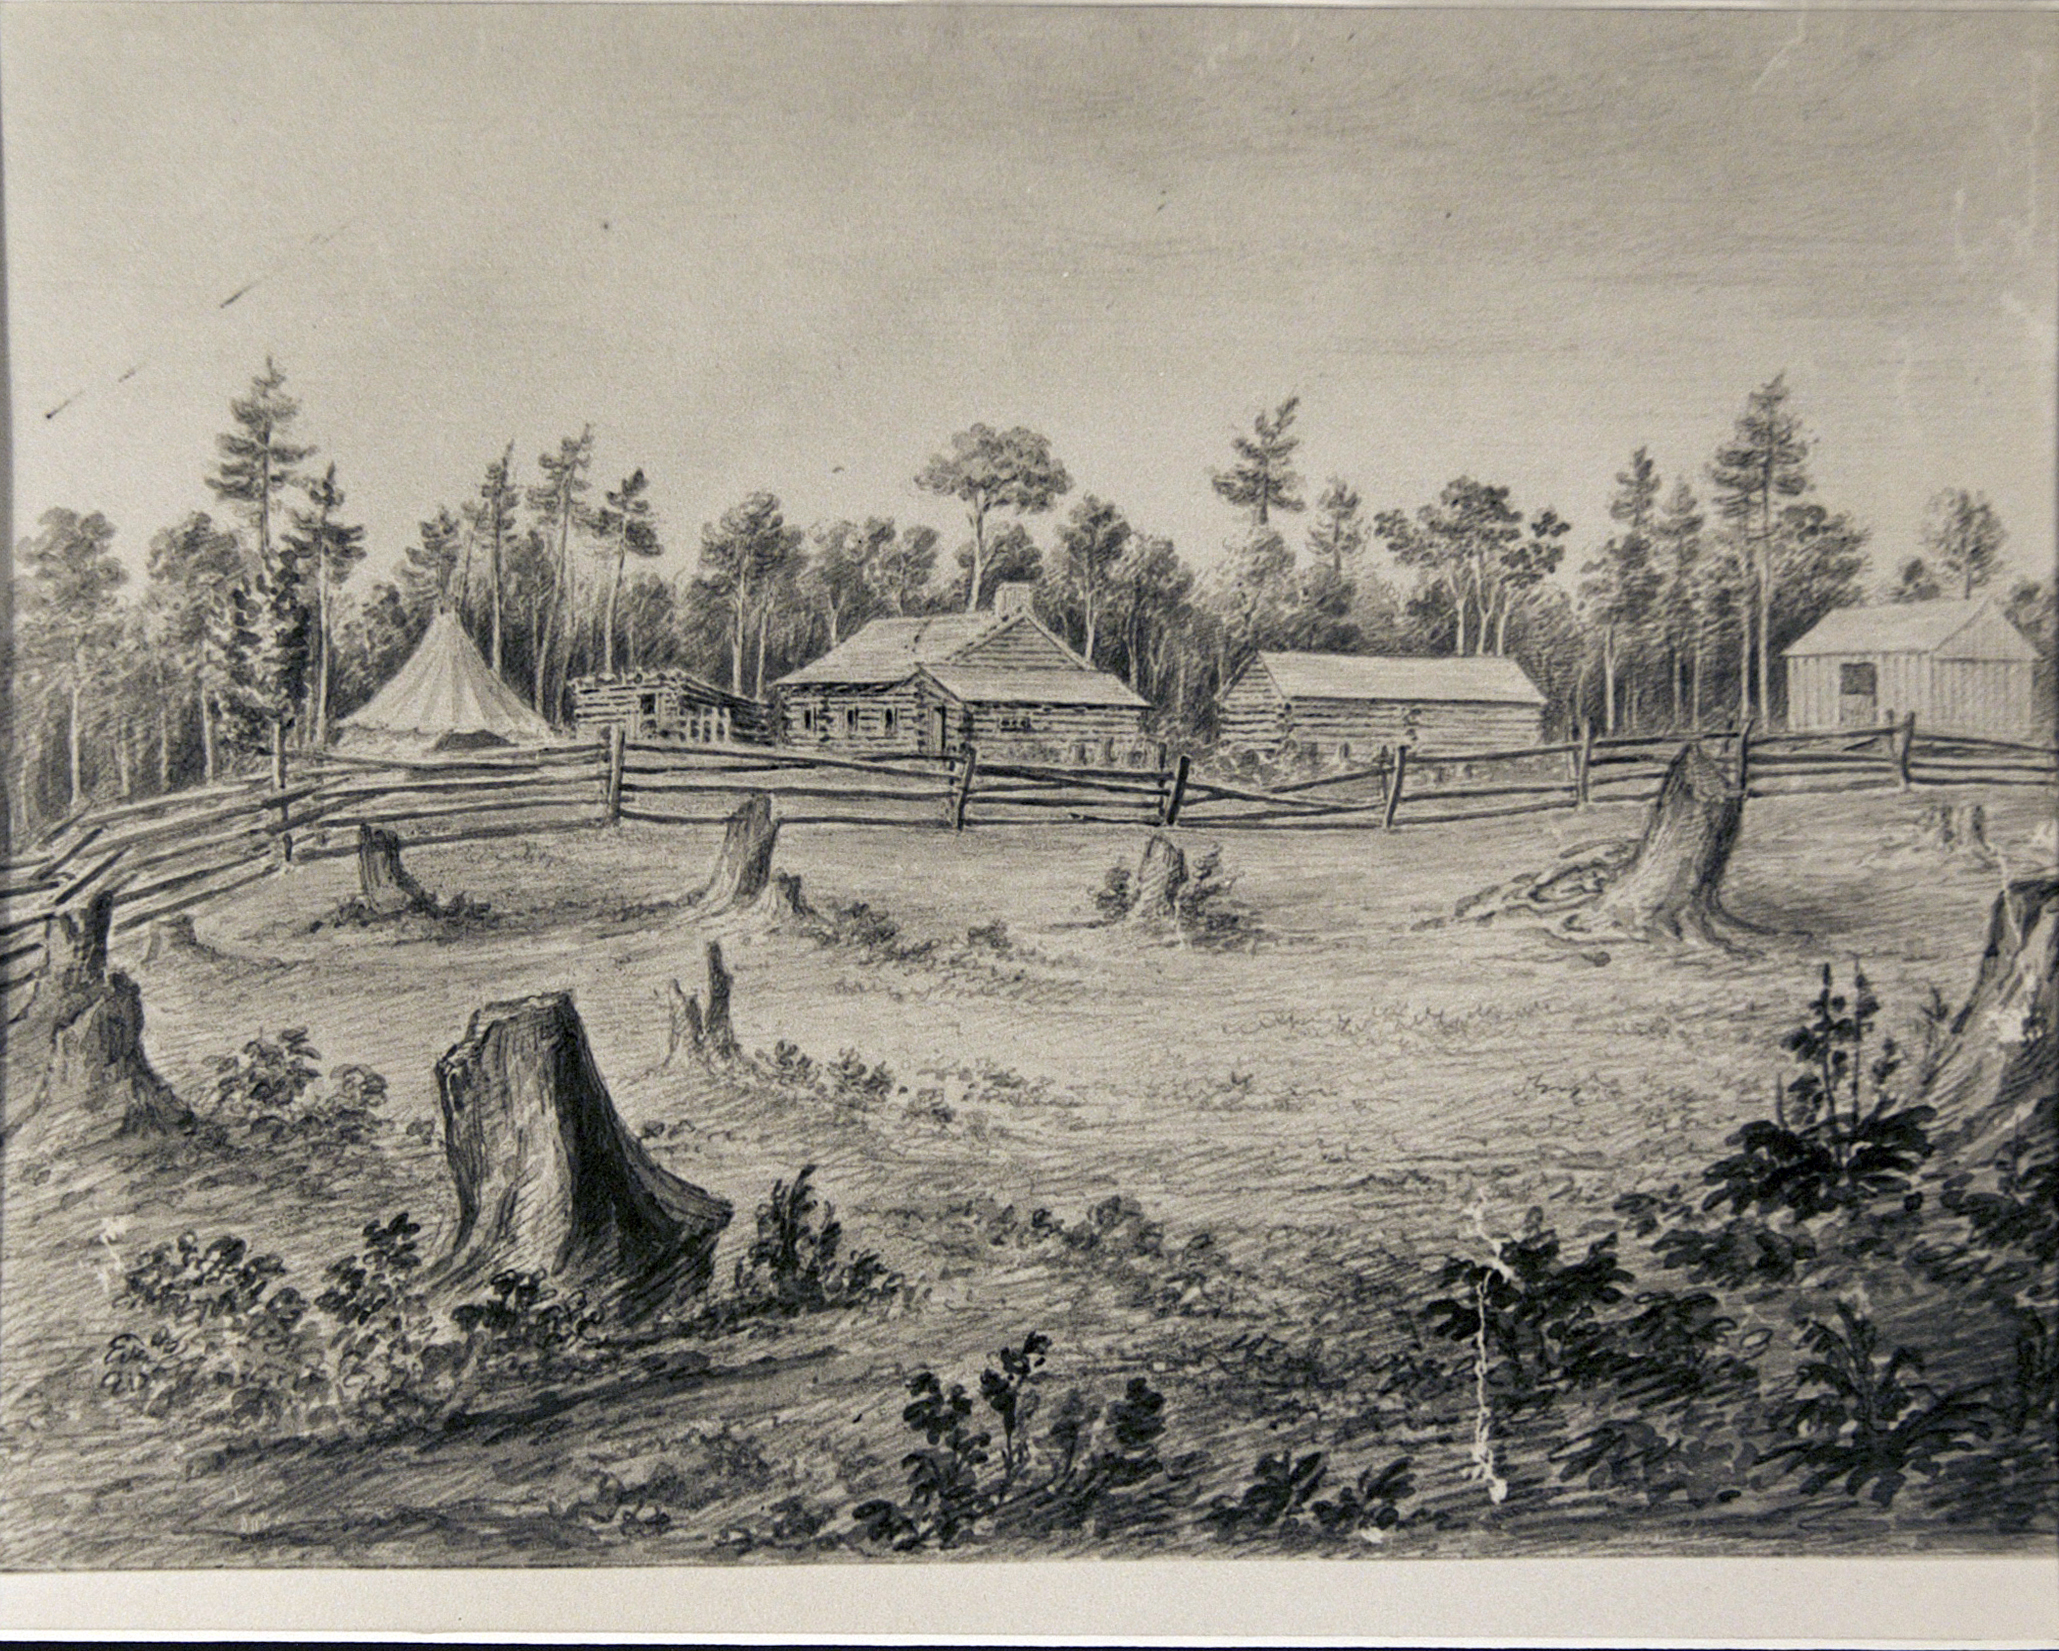 Croquis en noir et blanc montrant les structures de la ferme Blythe avant la construction de la grande maison. Il y a quatre bâtiments ainsi qu'une tente.